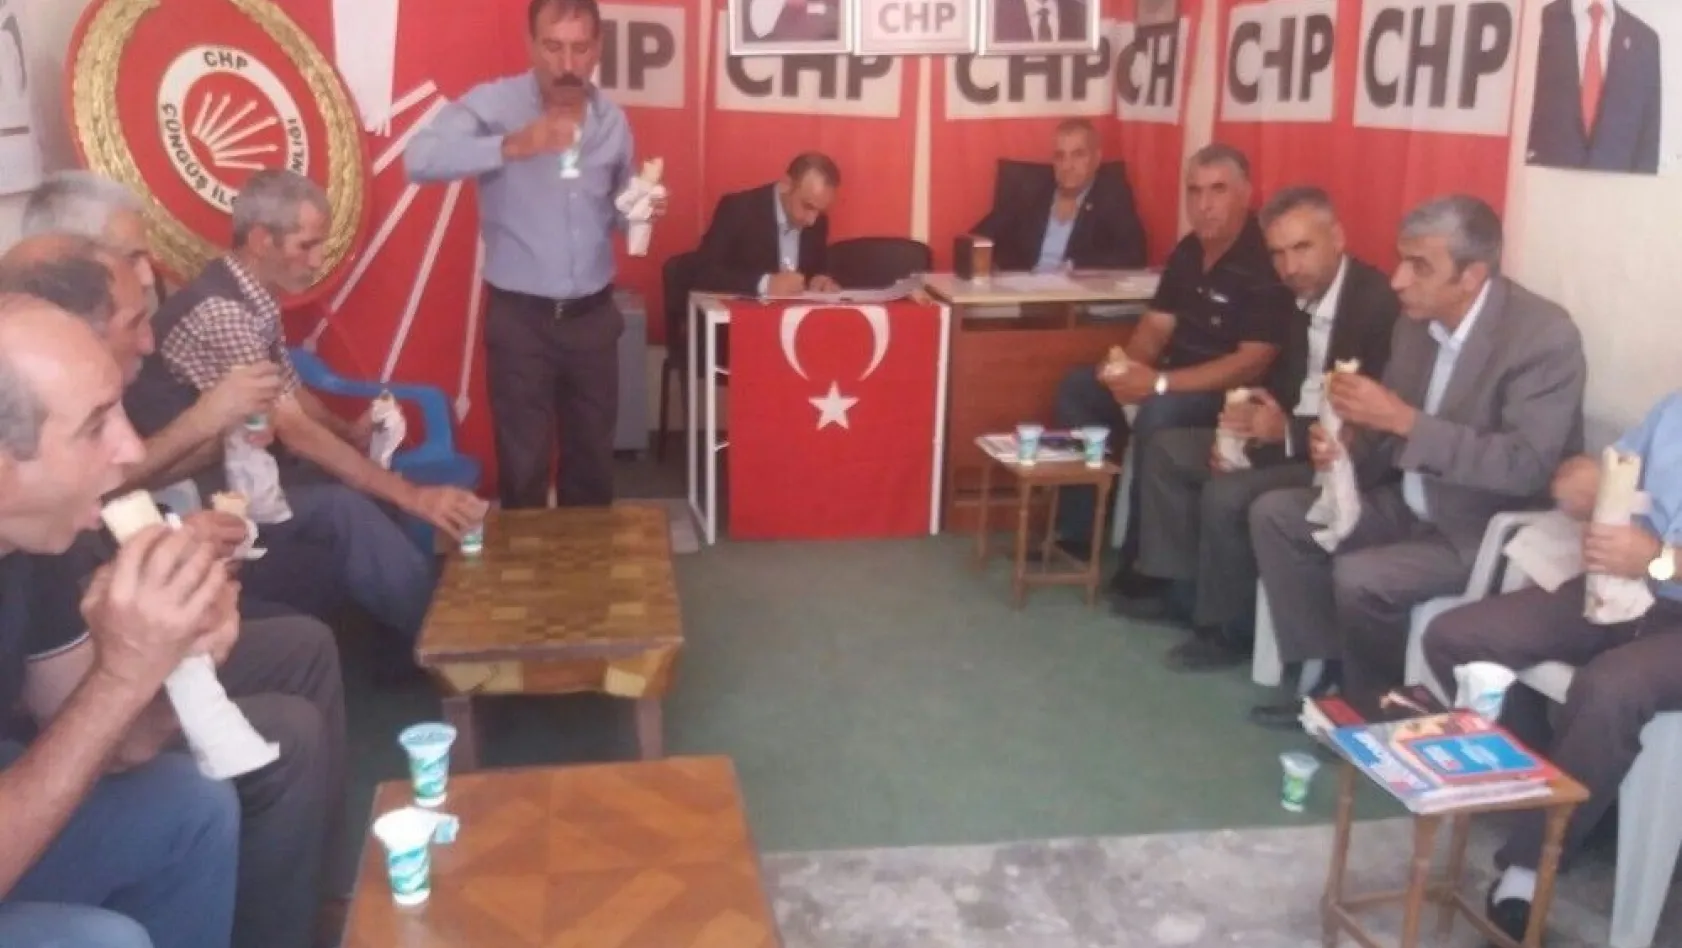 CHP Çüngüş 6'ncı olağanüstü kongresi yapıldı
